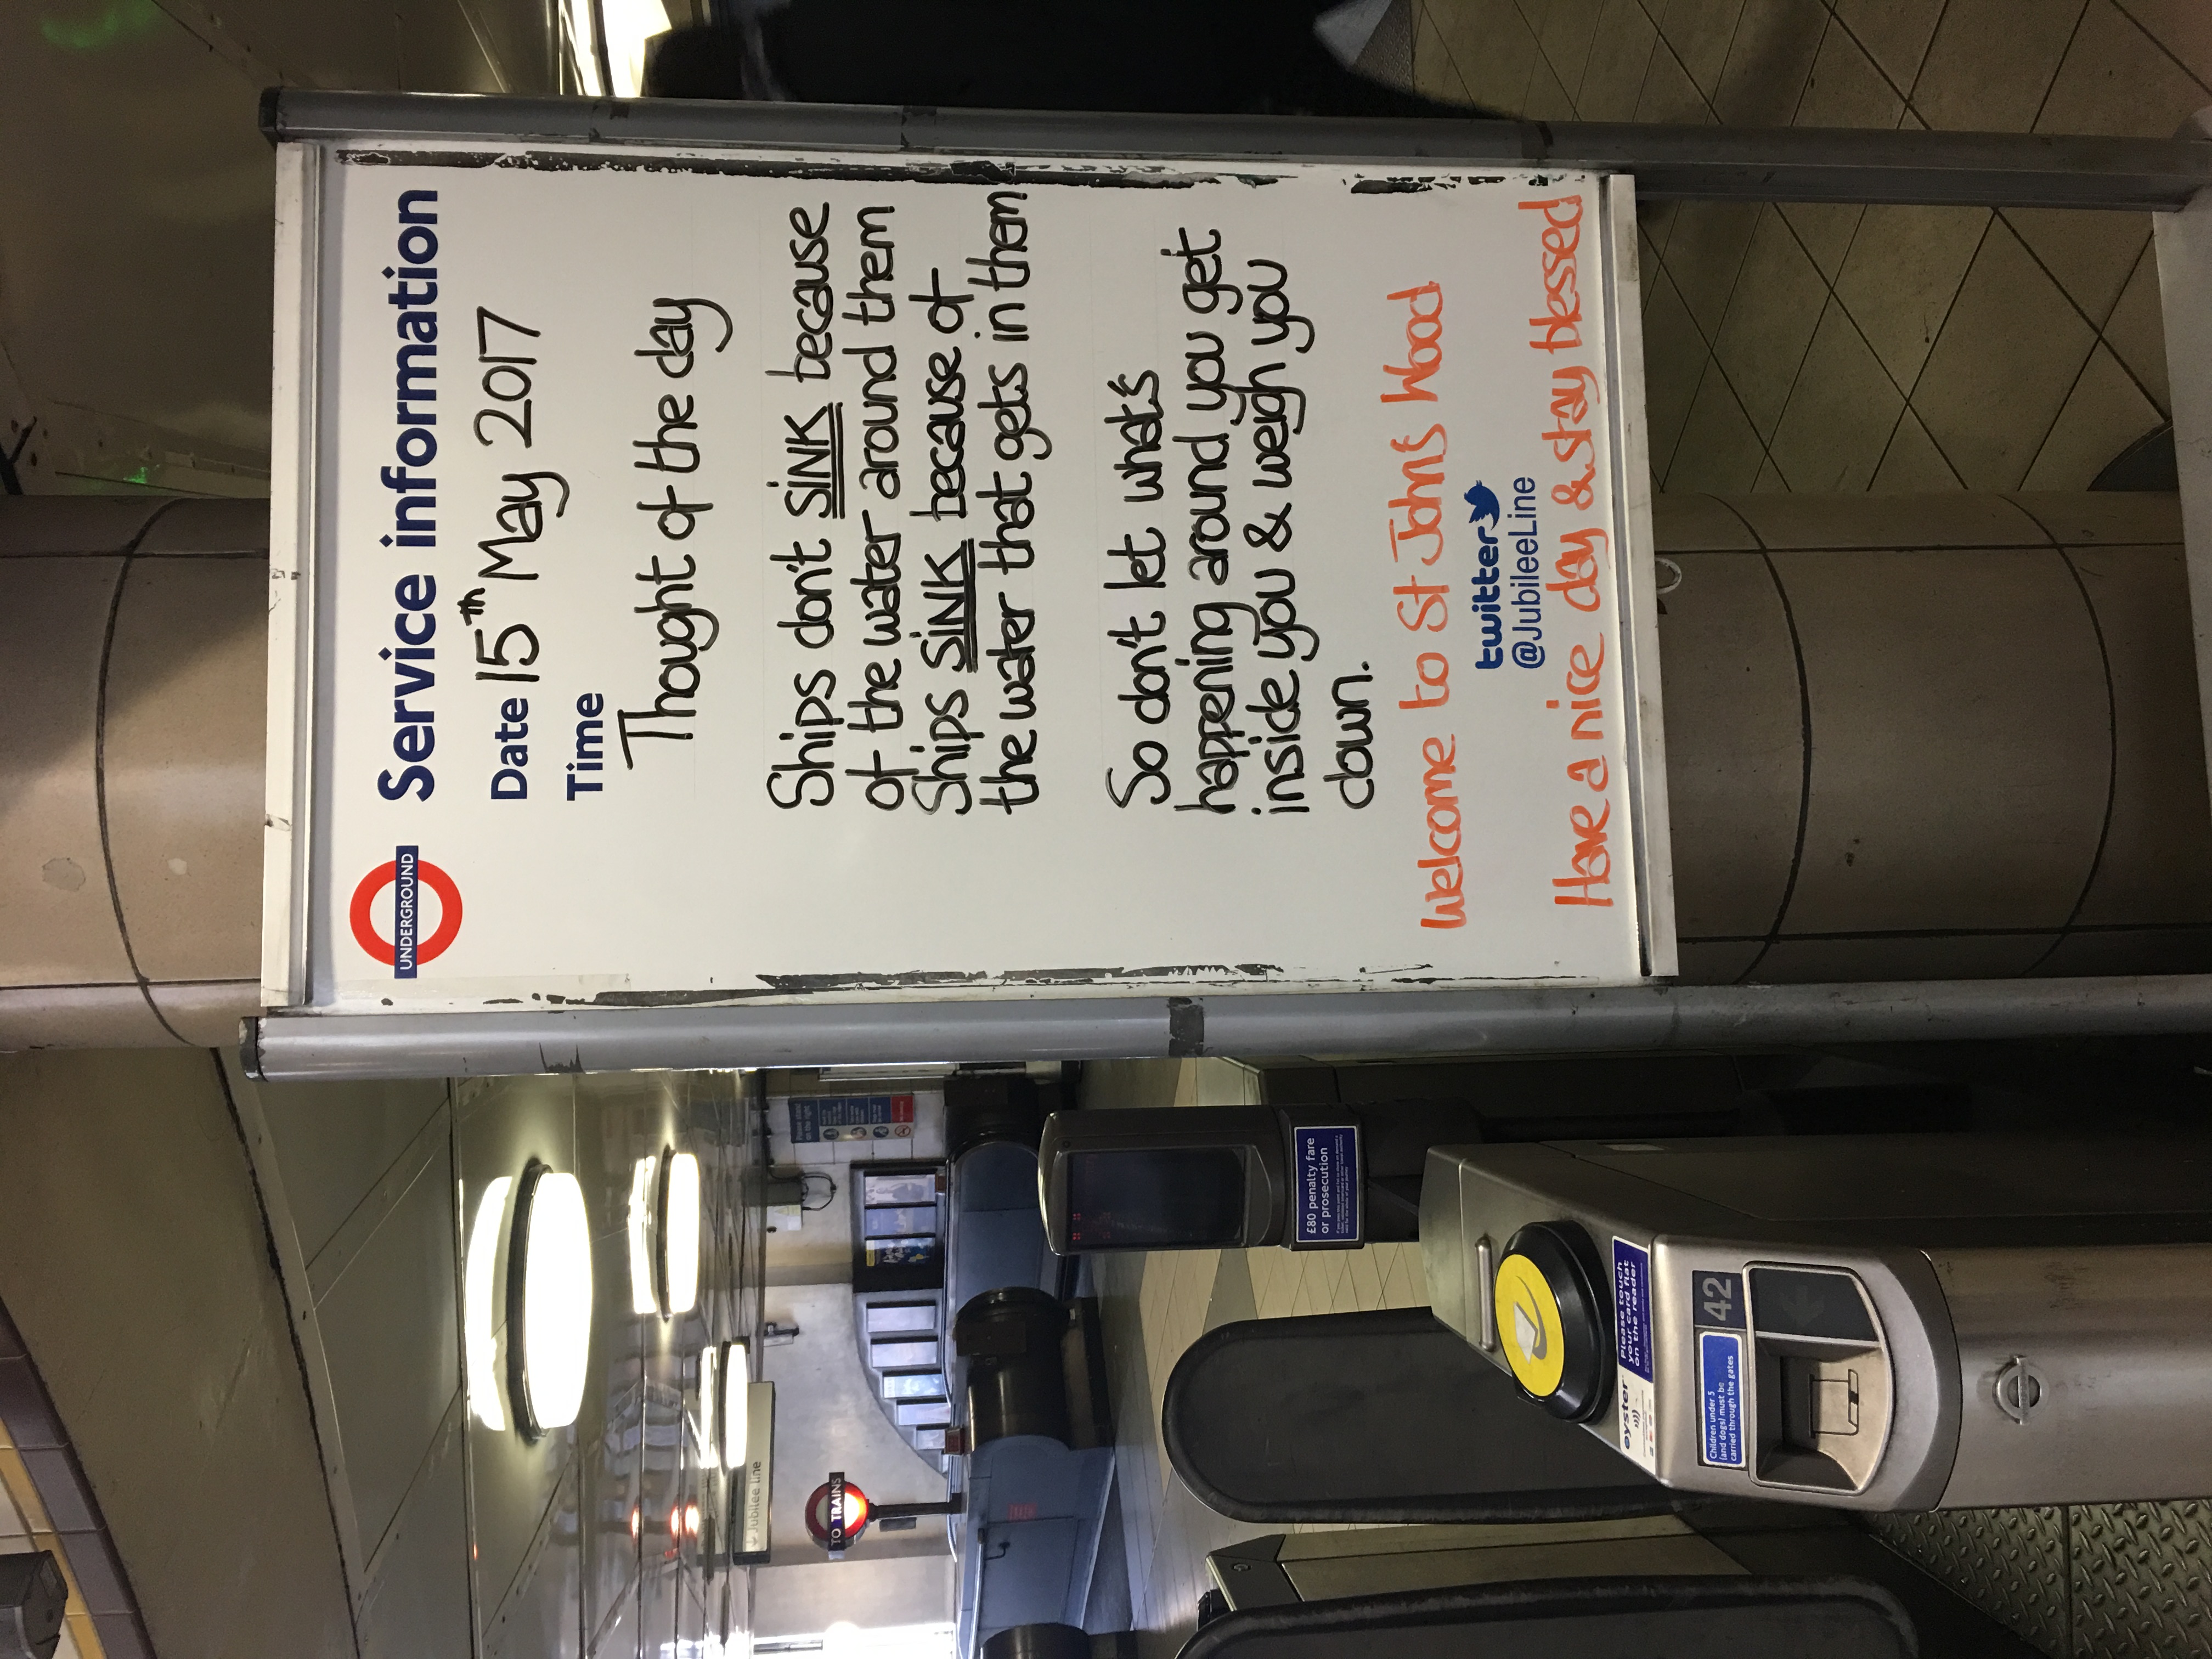 作家專欄文章朱維達: Thought of the Day  倫敦車站的啟示：不要自願被負能量壓倒